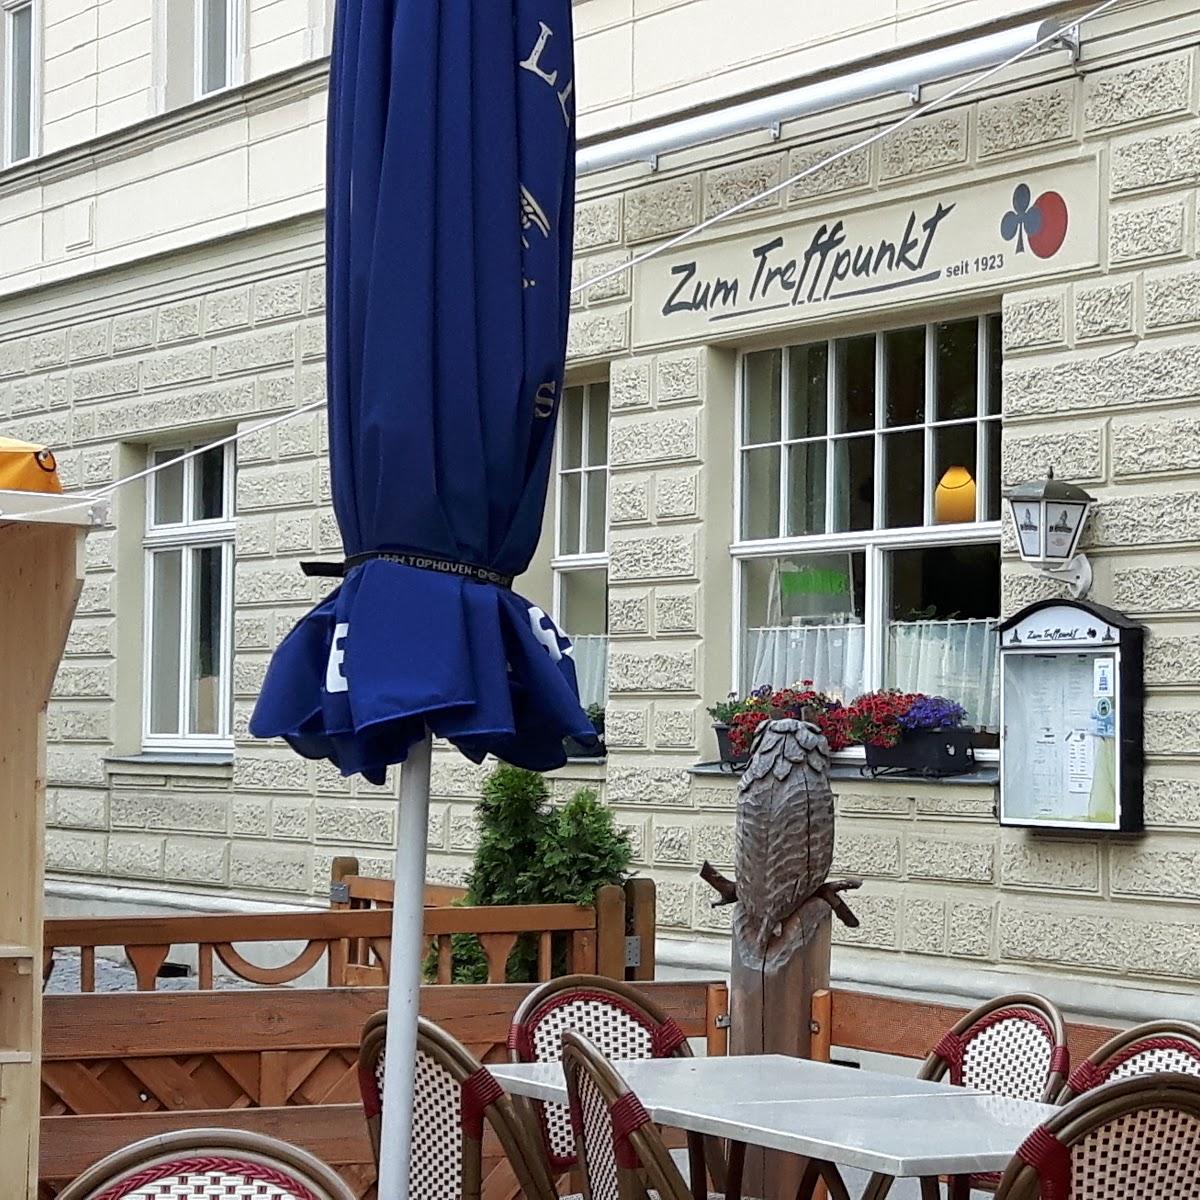 Restaurant "Zum Treffpunkt" in Ballenstedt